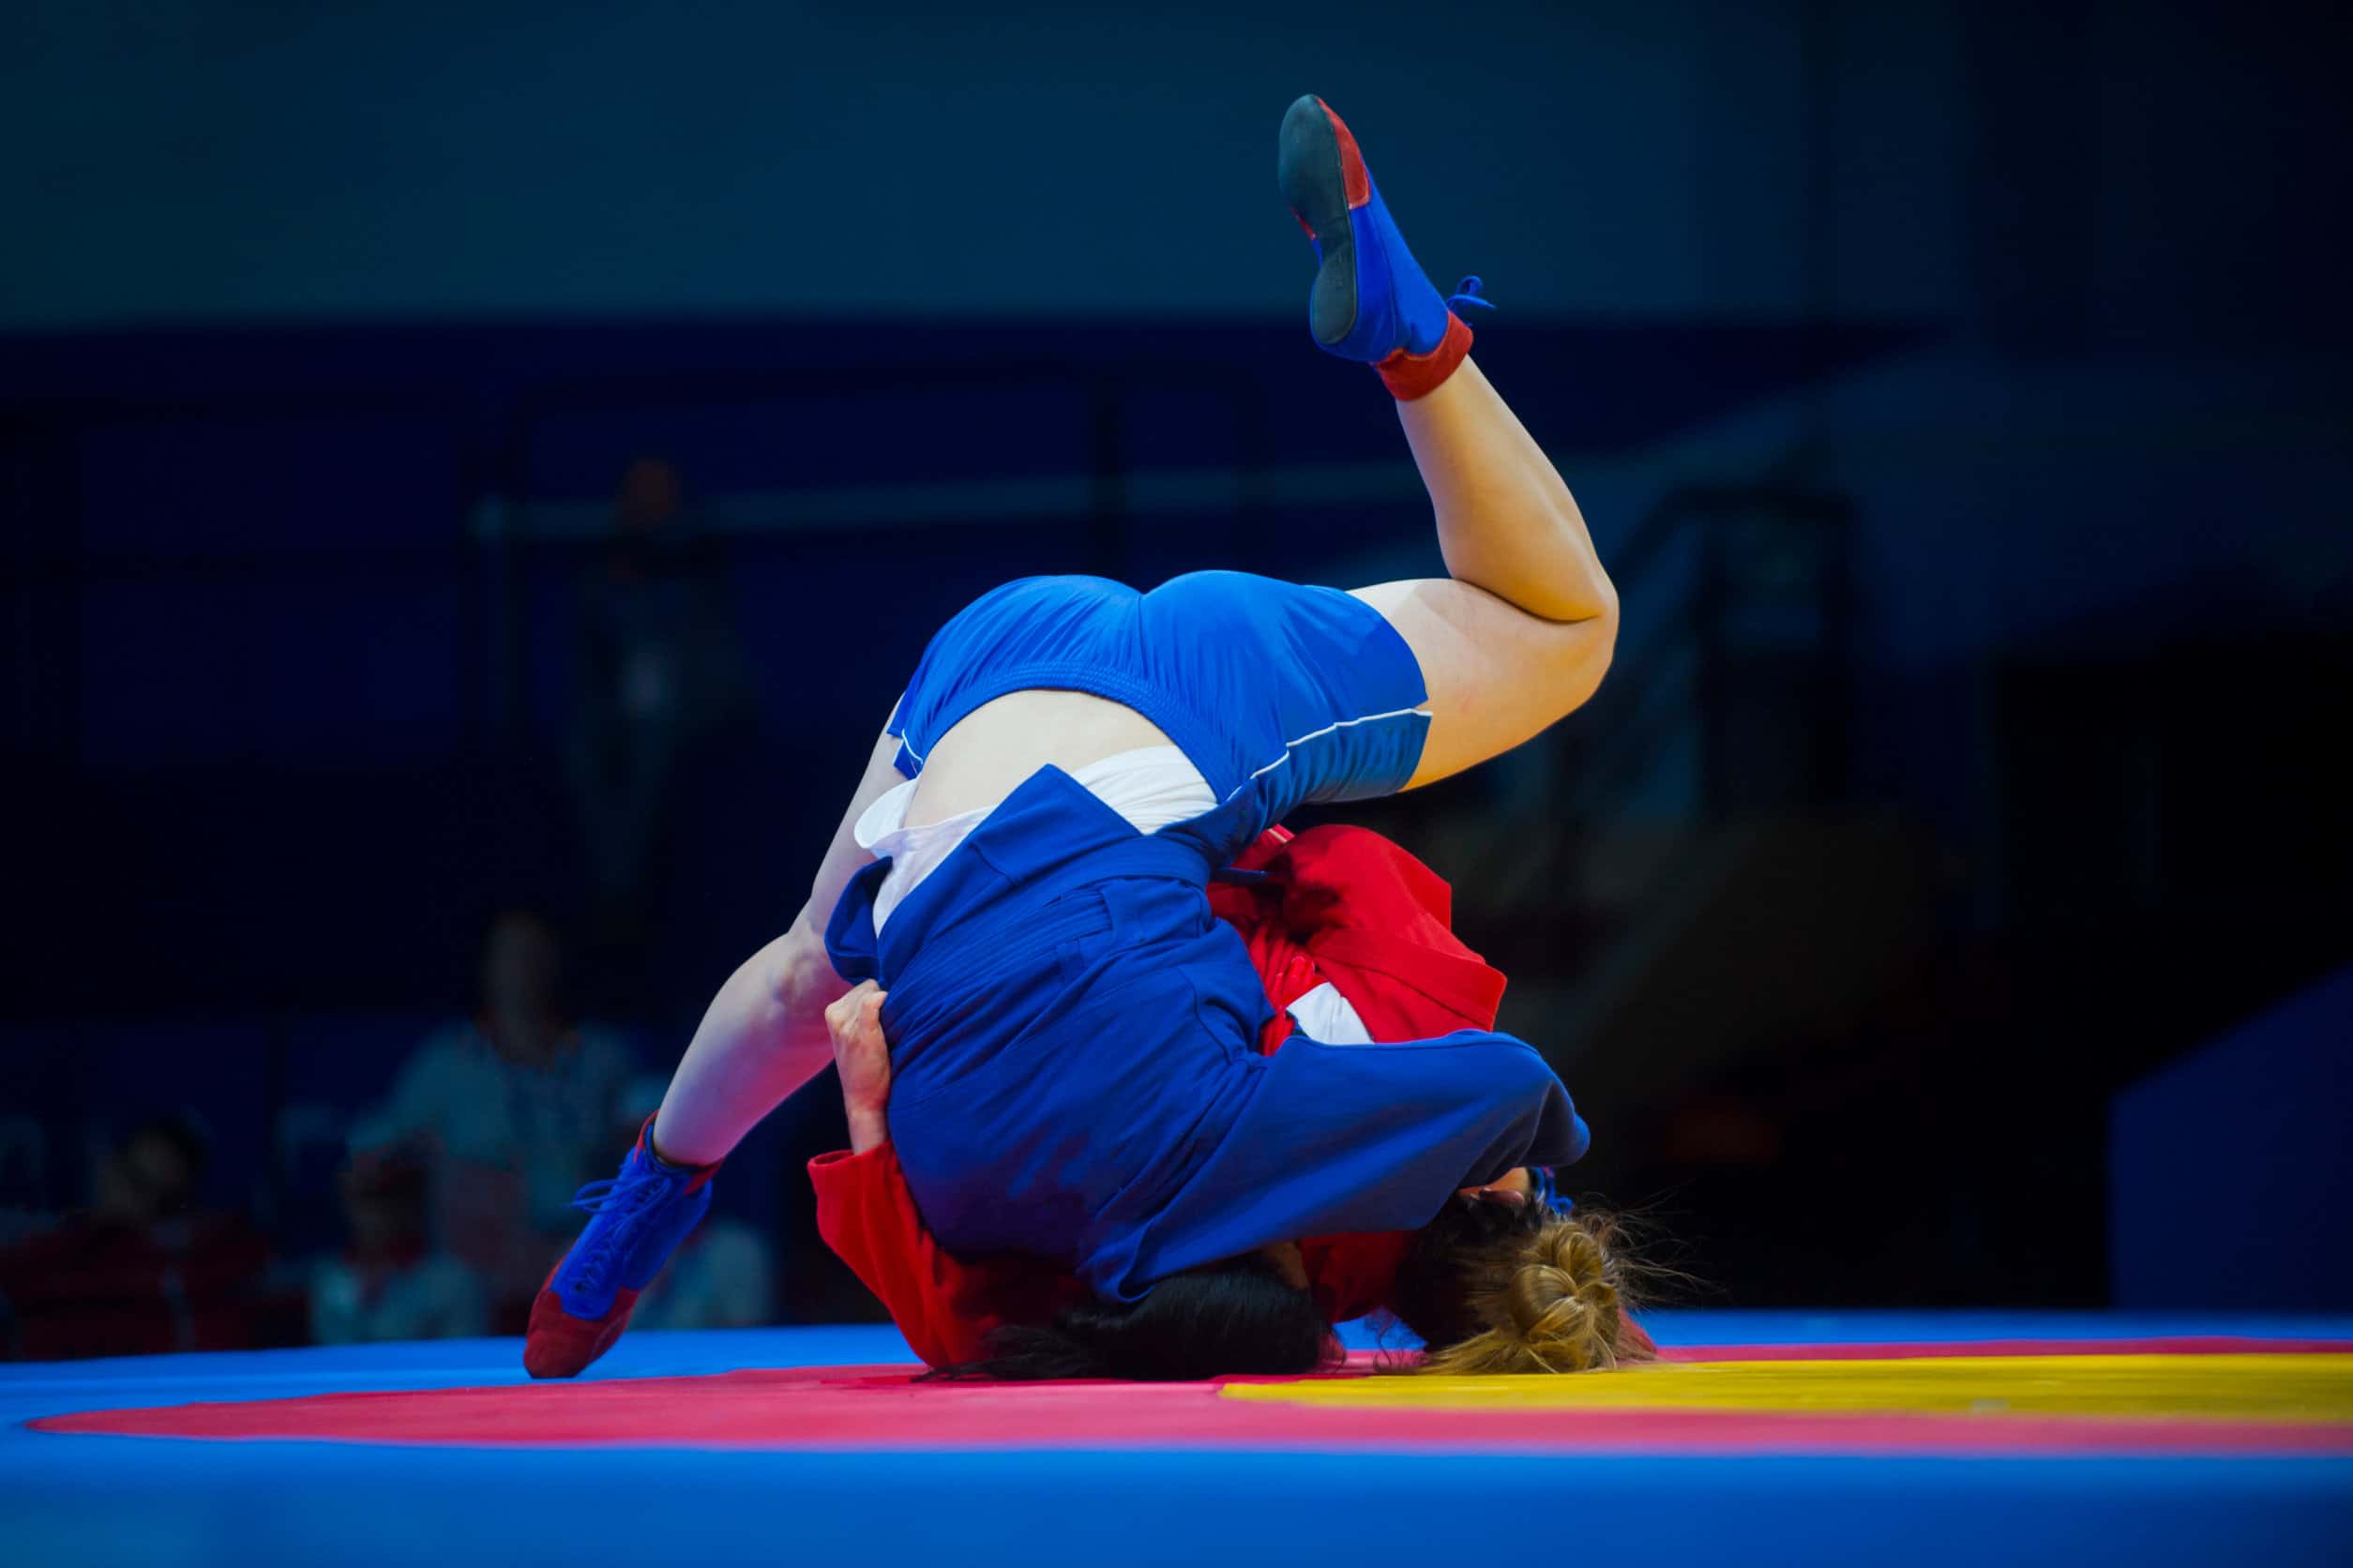 Sambo contre Judo |  Quelles sont les différences?